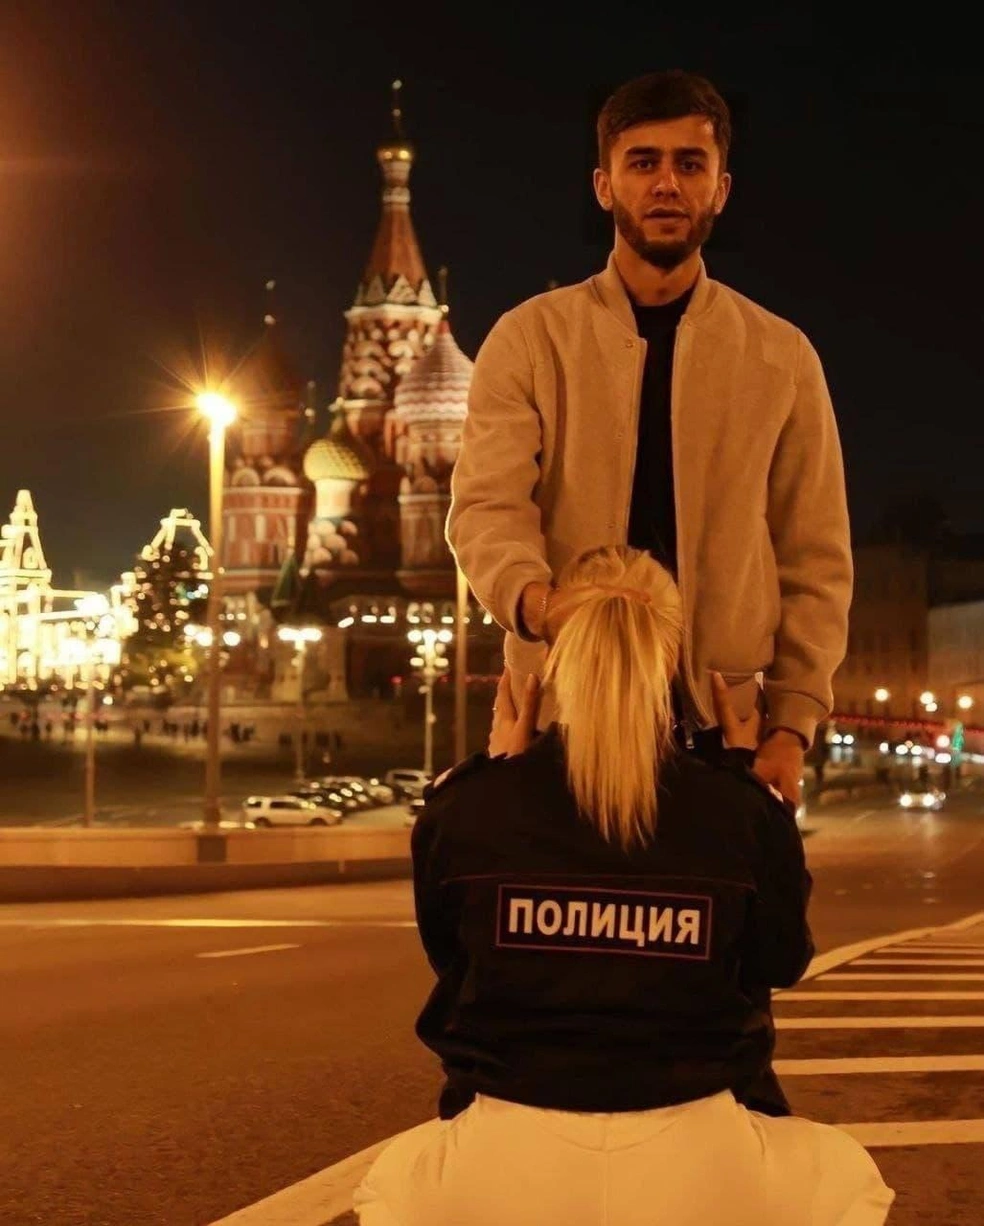 Психолог объяснила, почему на российских улицах появились голые люди